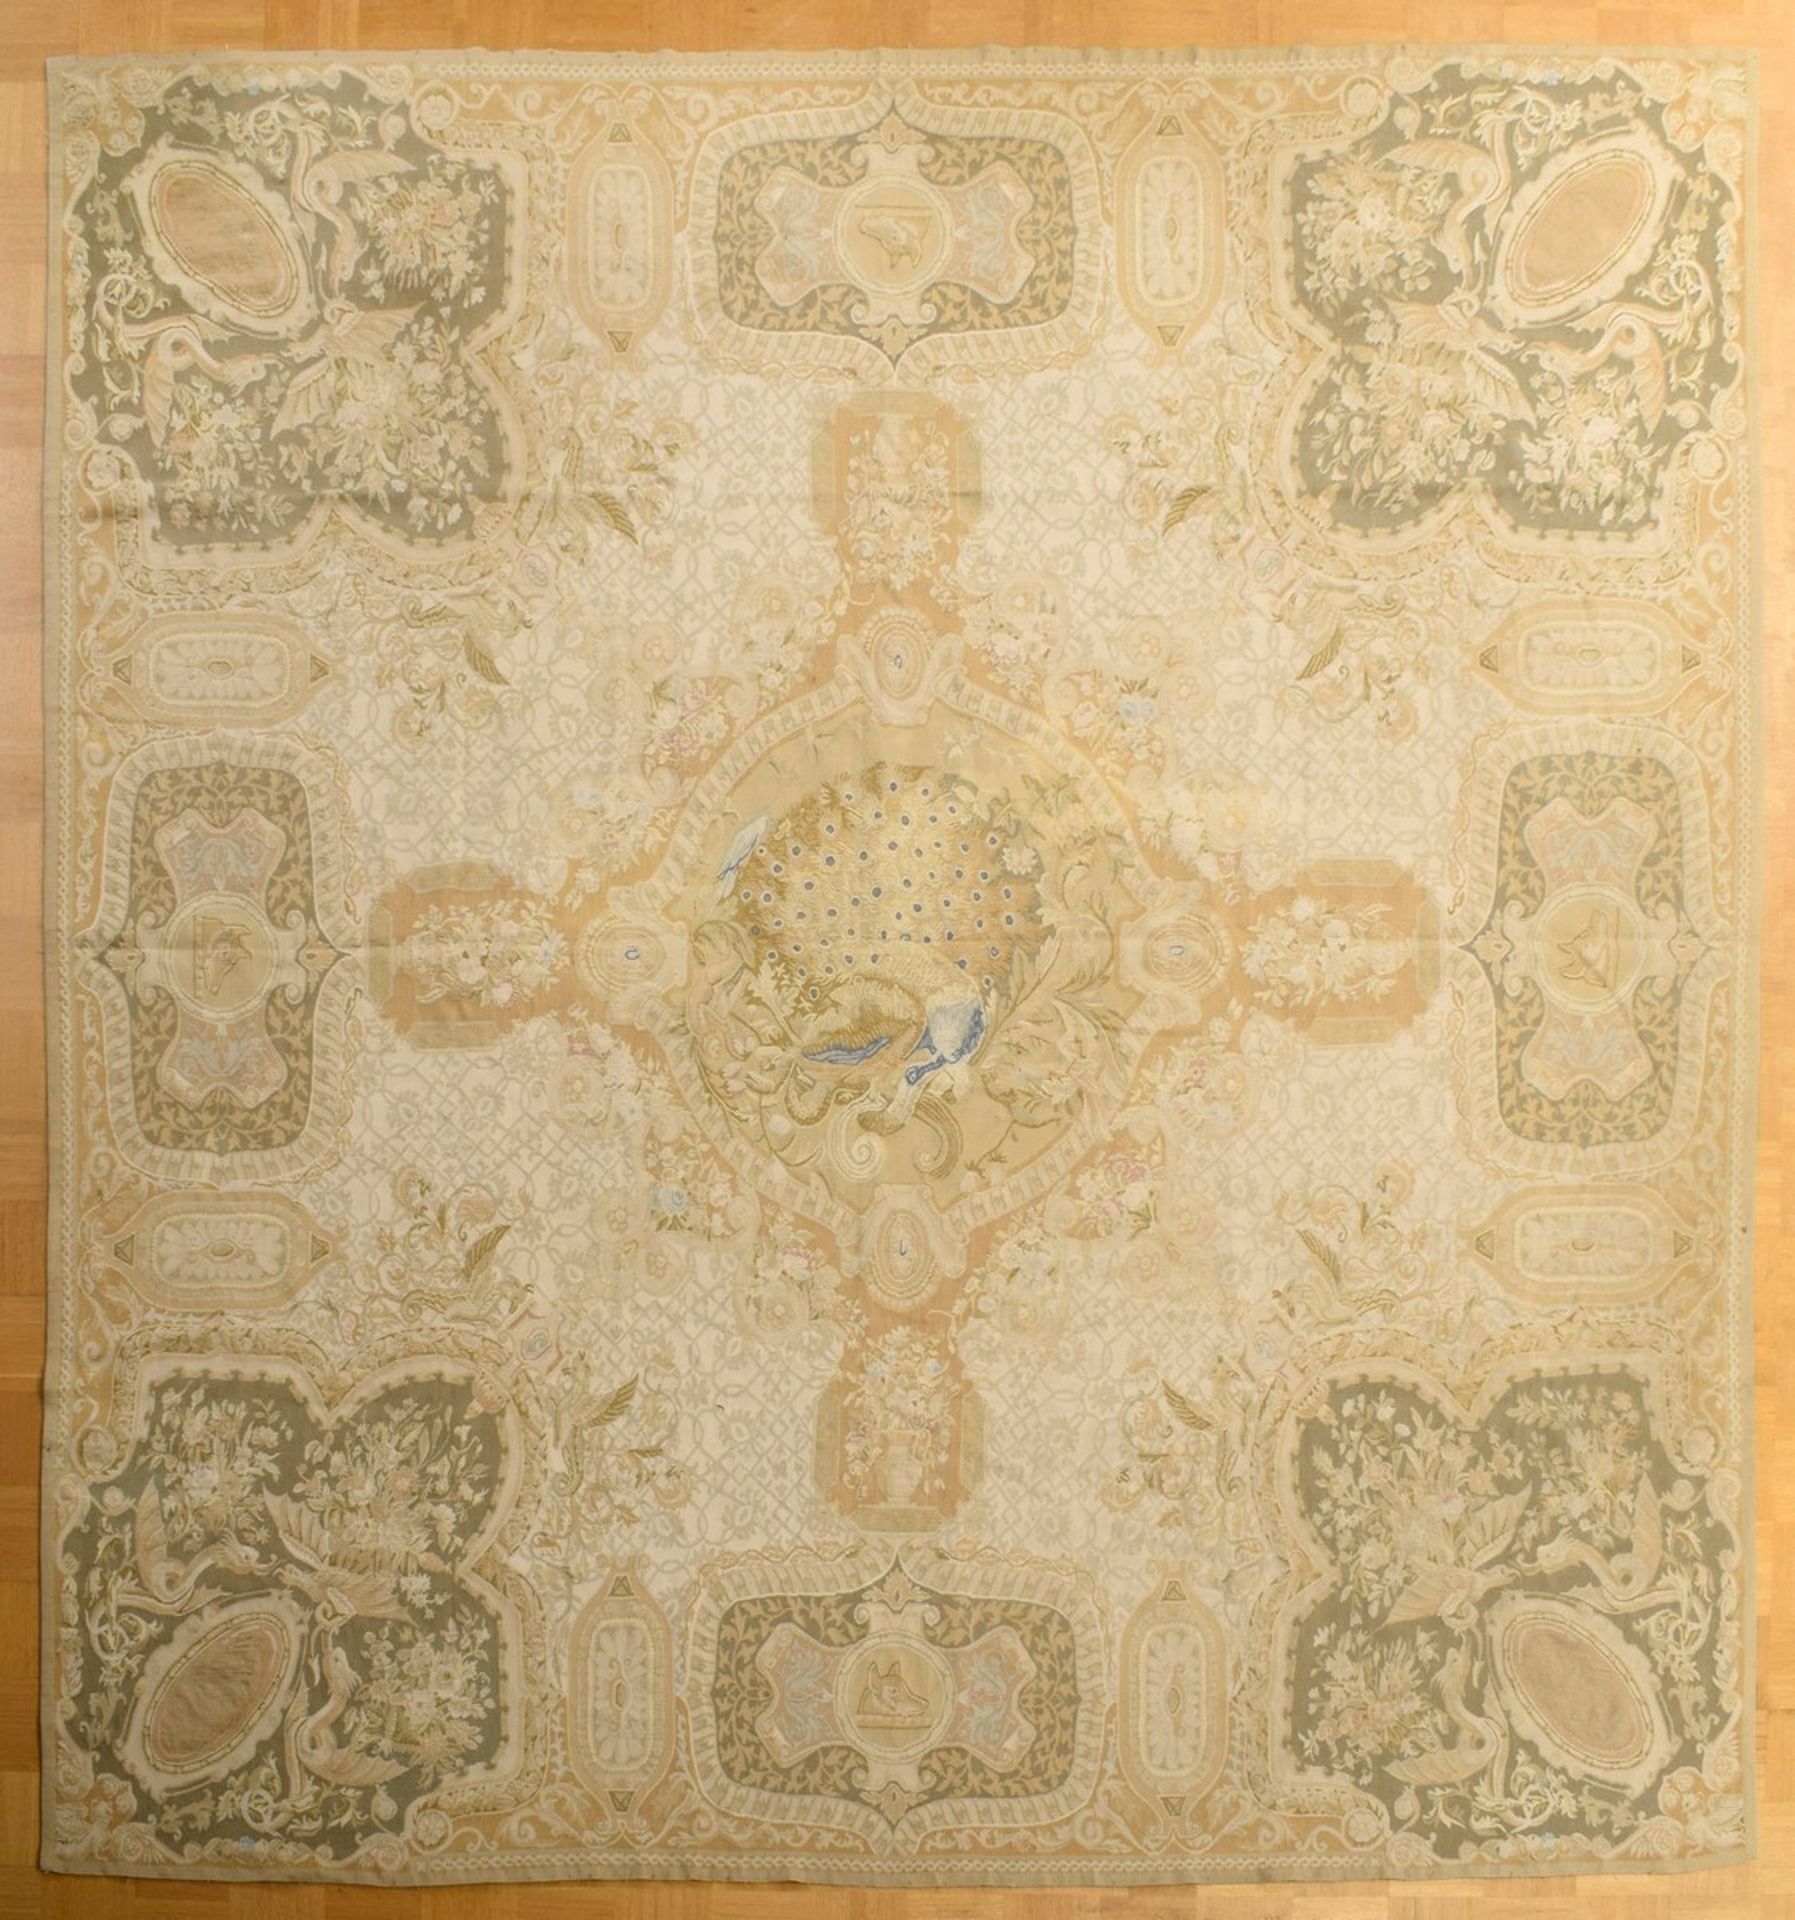 Großer Aubusson Teppich in Grün- und Beigetönen nach altem Vorbild, 20.Jh., 280x310cm - Bild 4 aus 9